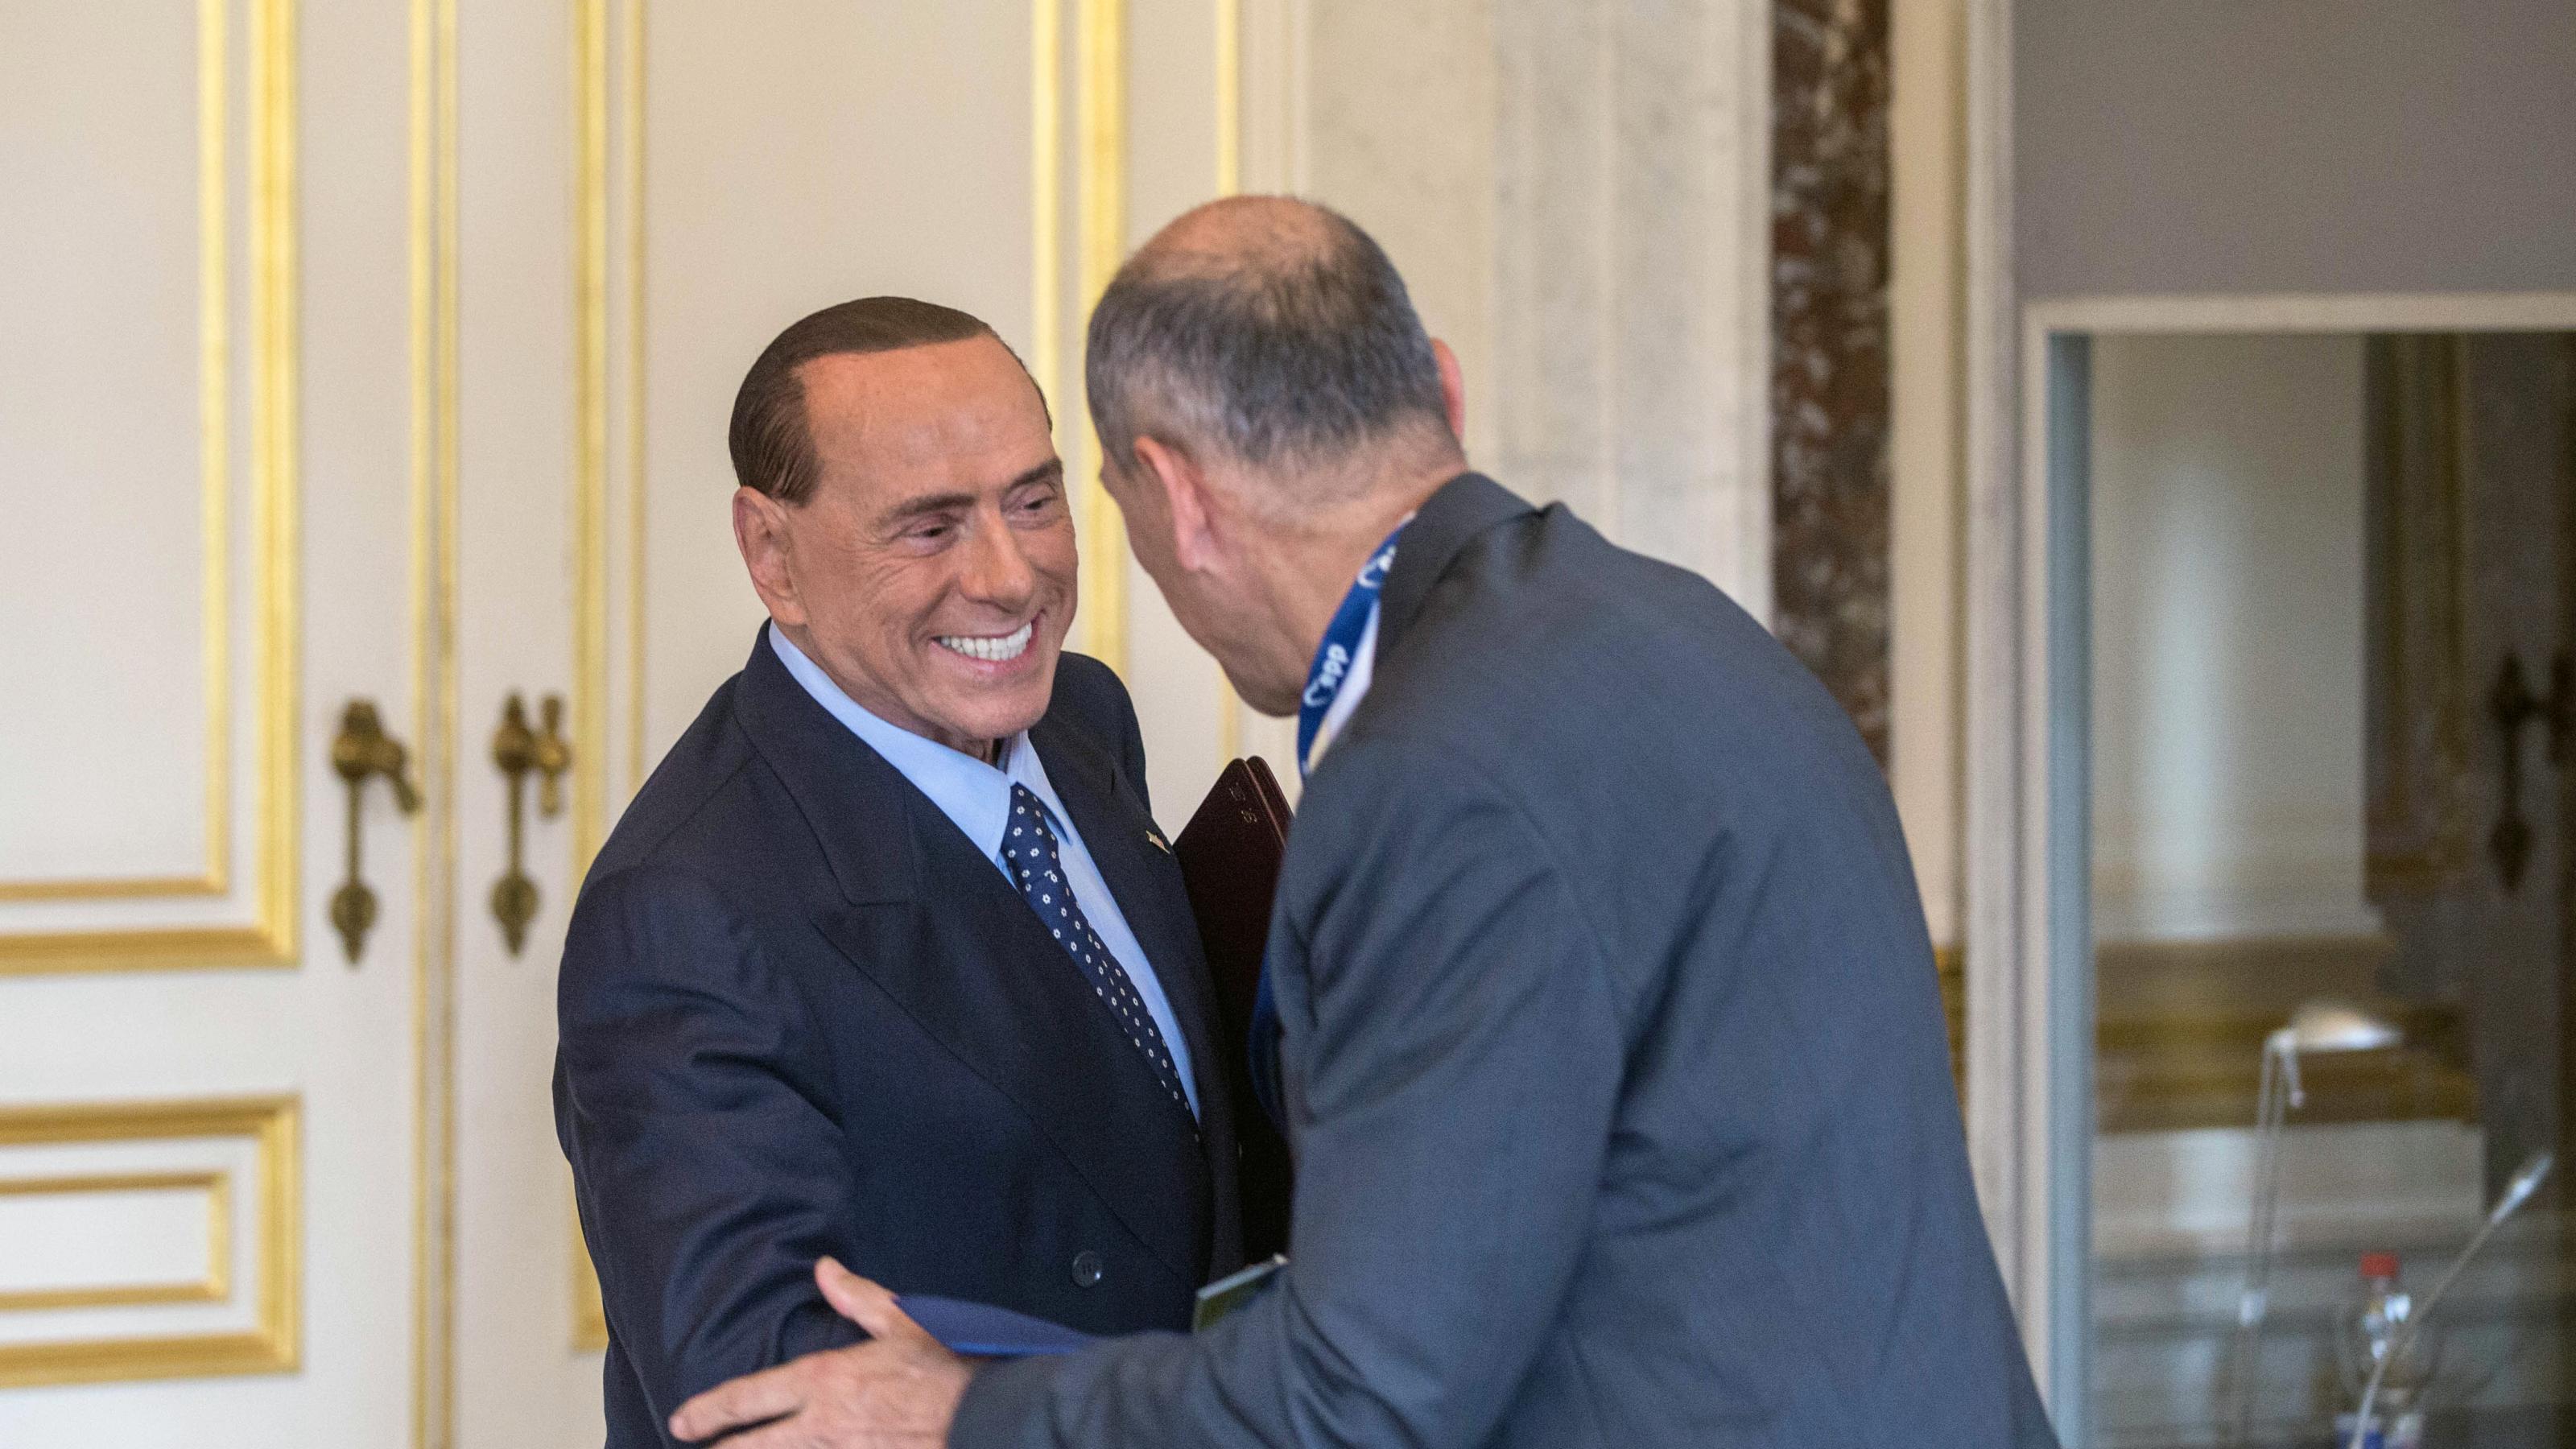 Silvio Berlusconi schüttelt grinsend einem Mann die Hand